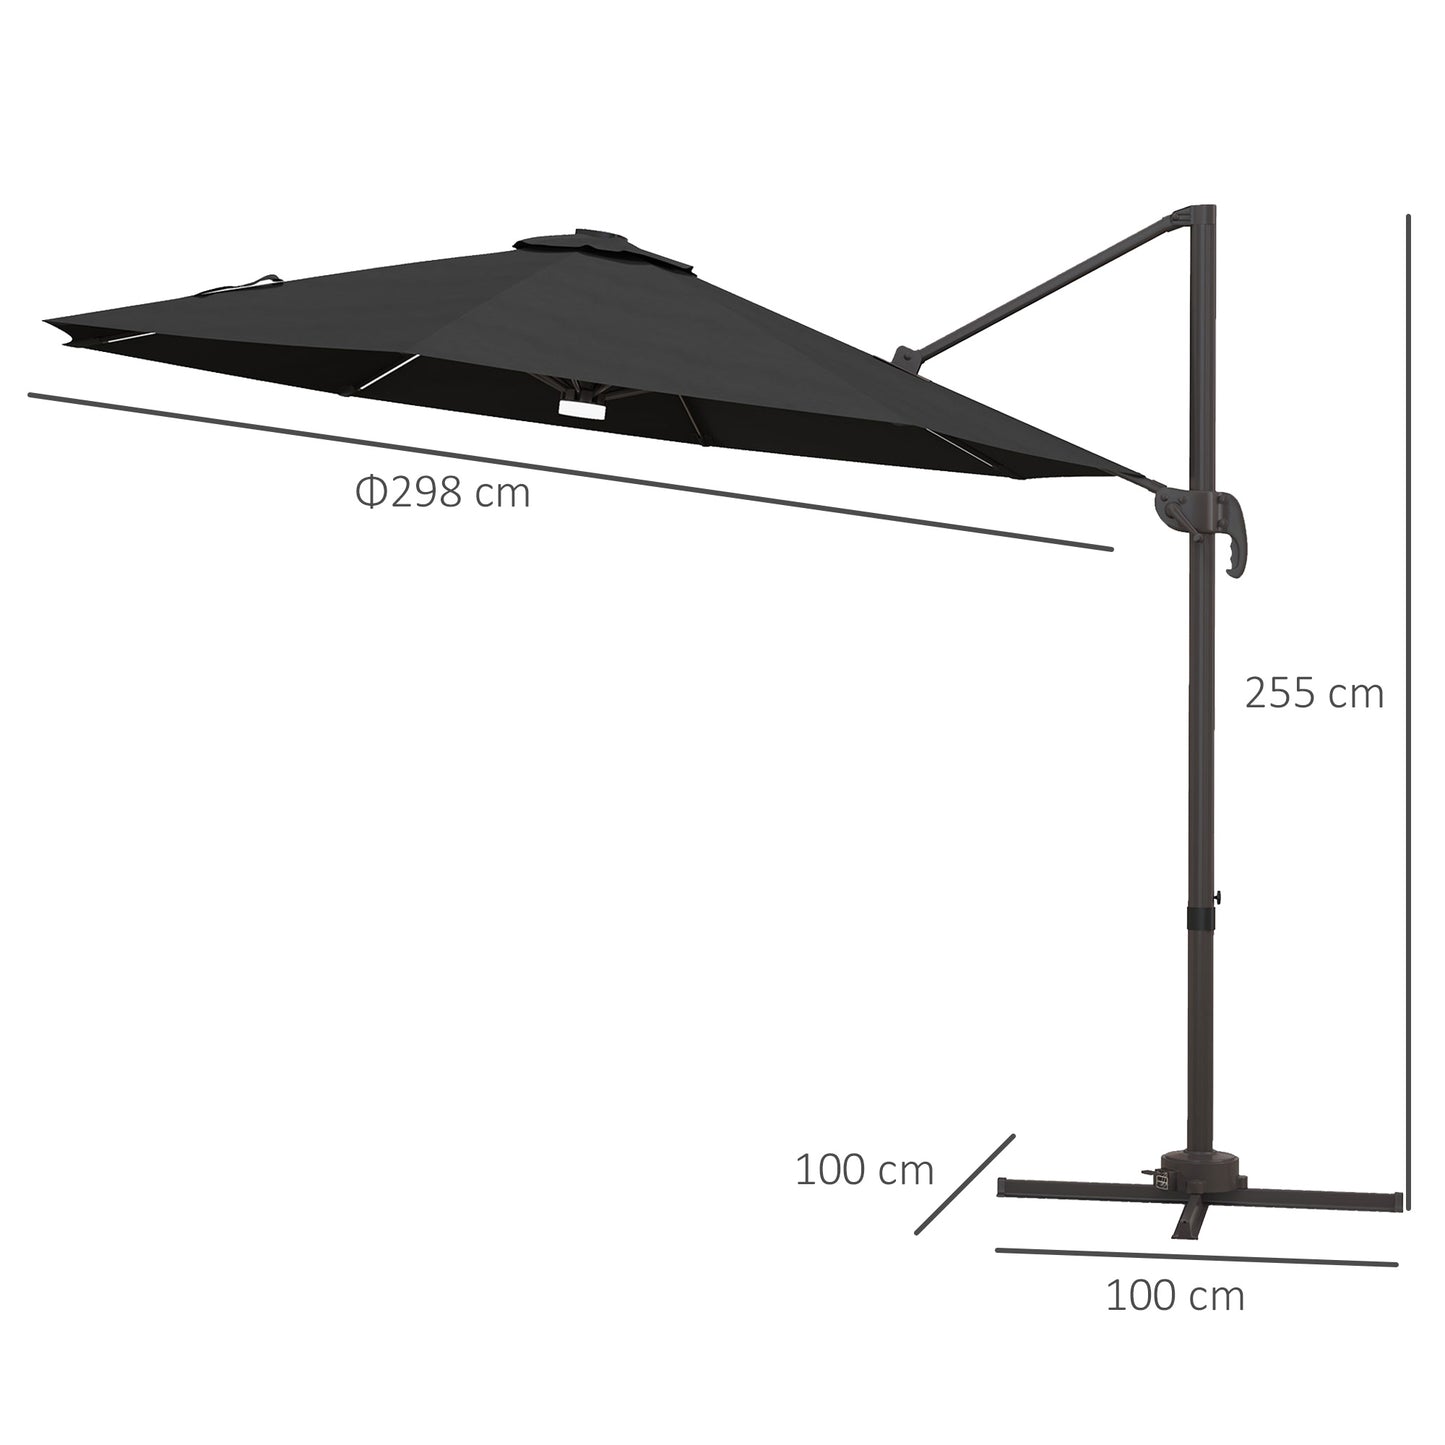 Outsunny 3(m) LED Cantilever Parasol Outdoor Sun Umbrella w/ Base Solar Lights Dark Grey